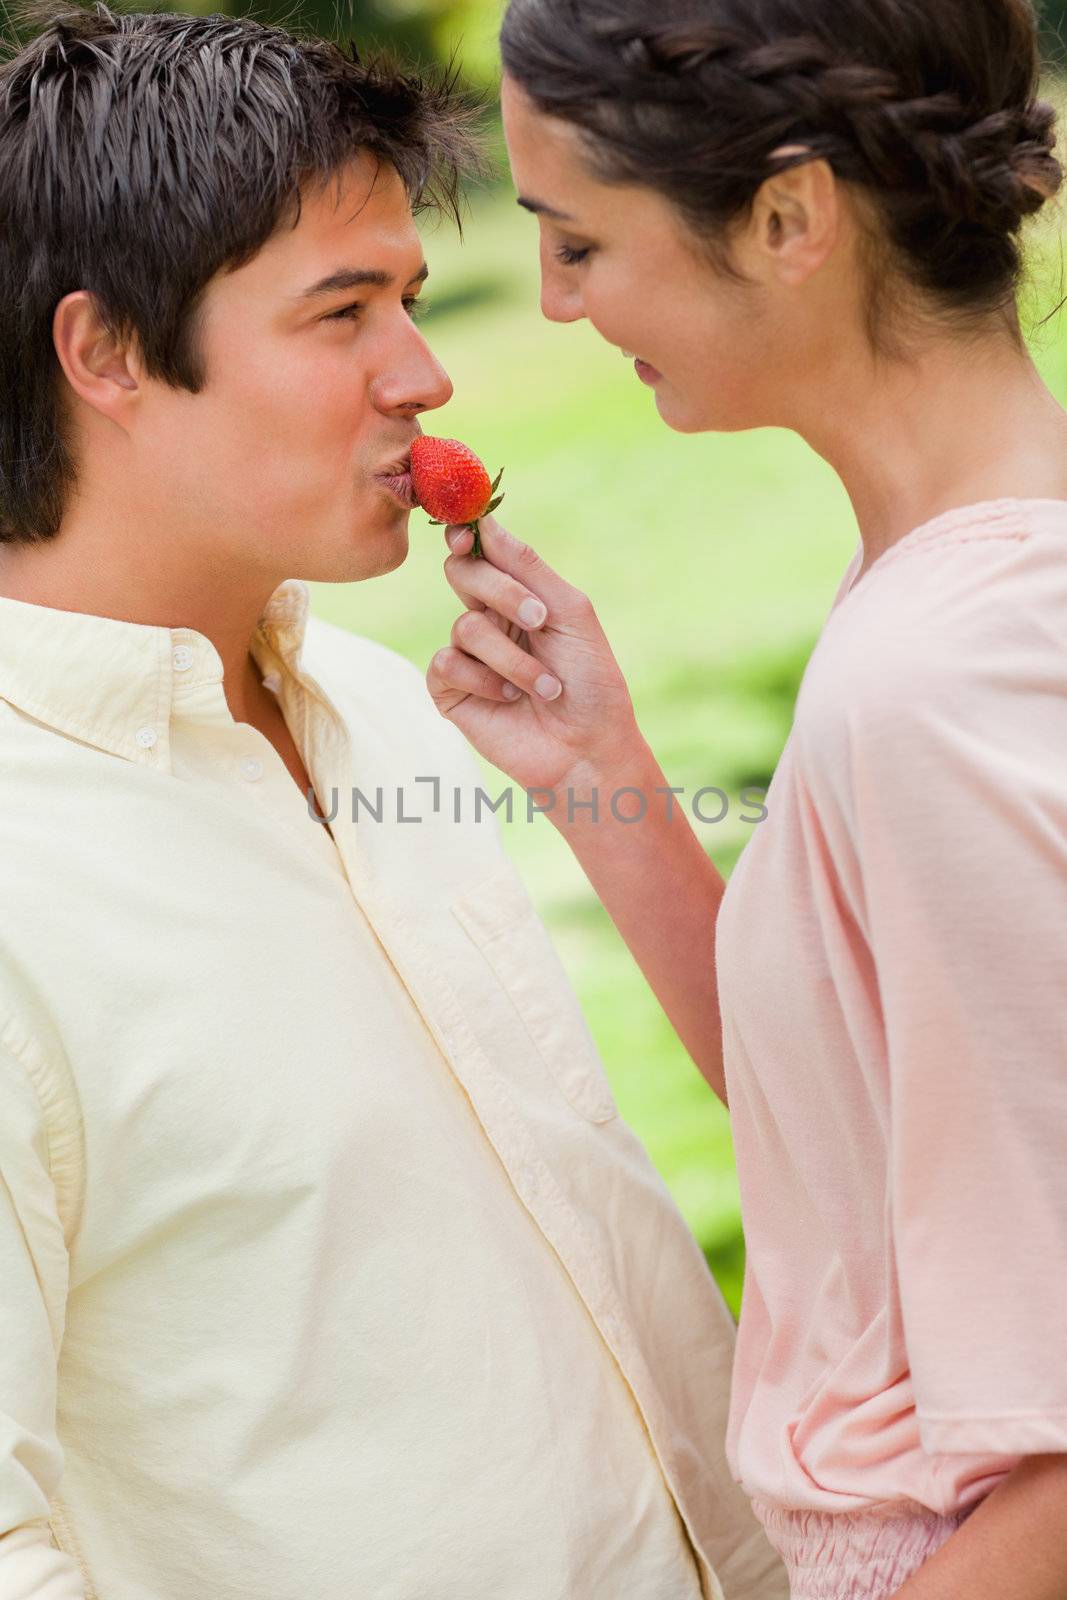 Woman feeding a strawberry to her friend by Wavebreakmedia